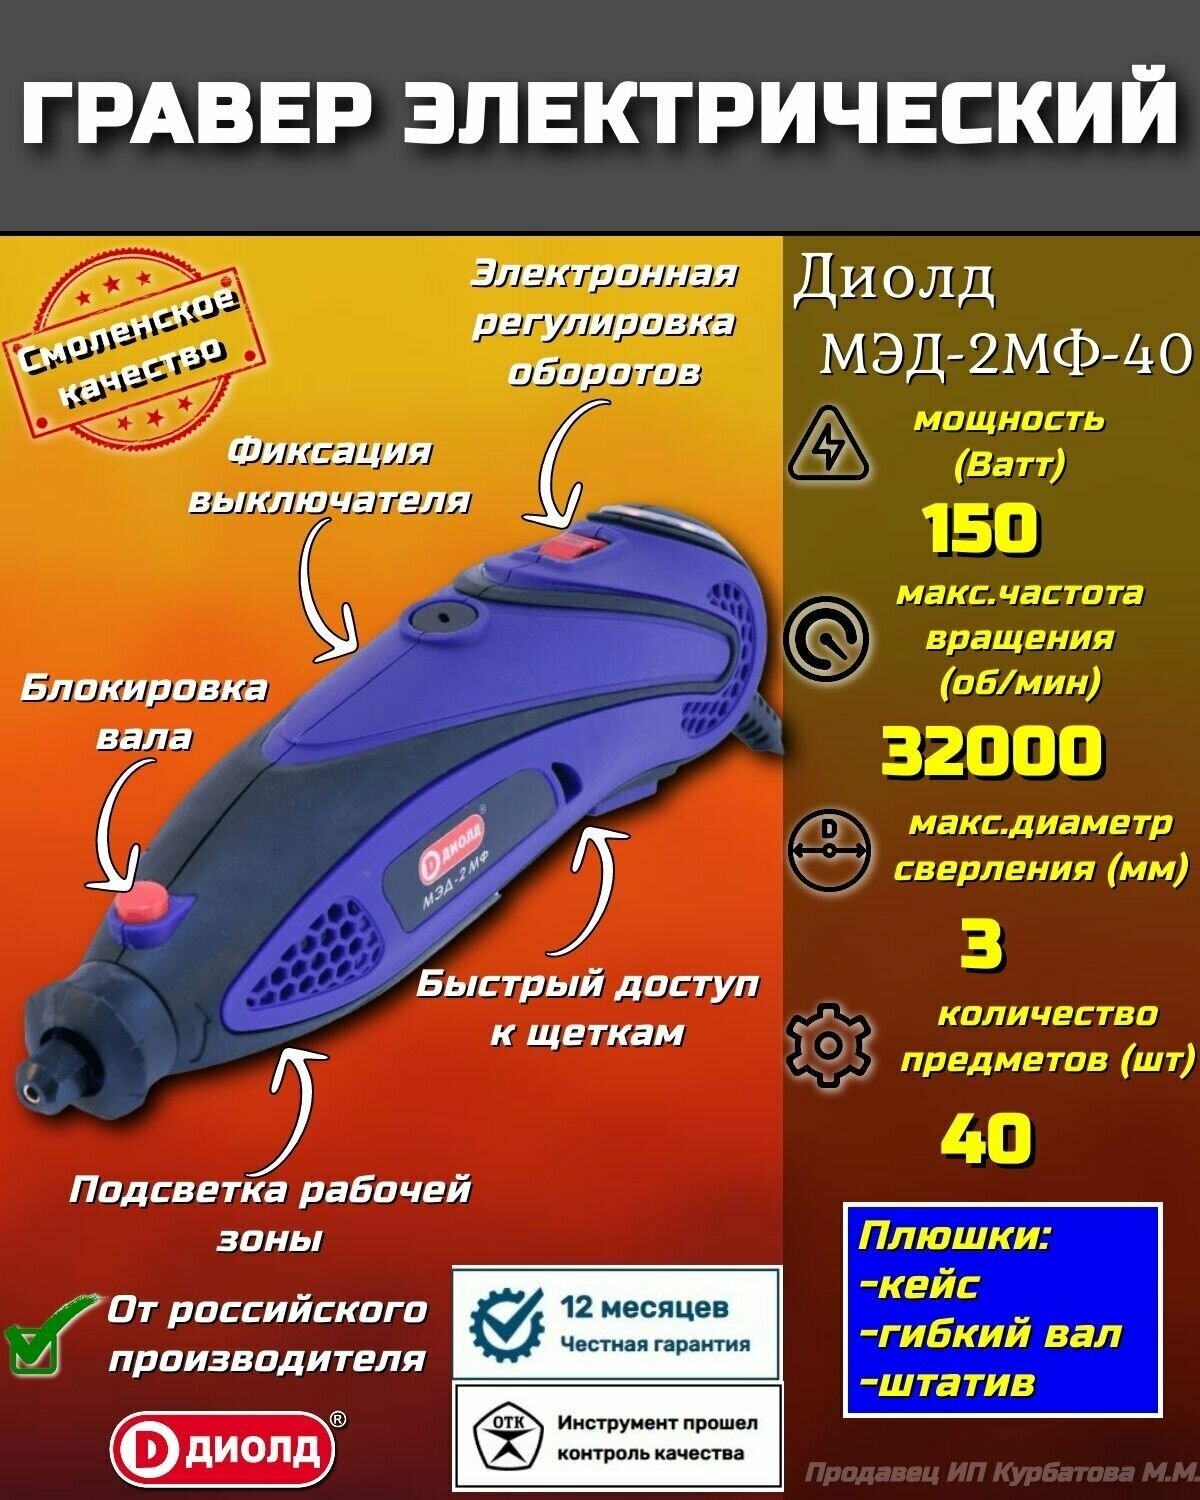 Мини-дрель ДИОЛД МЭД-2 МФ 250 предметов 150Вт 10000-32000об/мин - фото №17